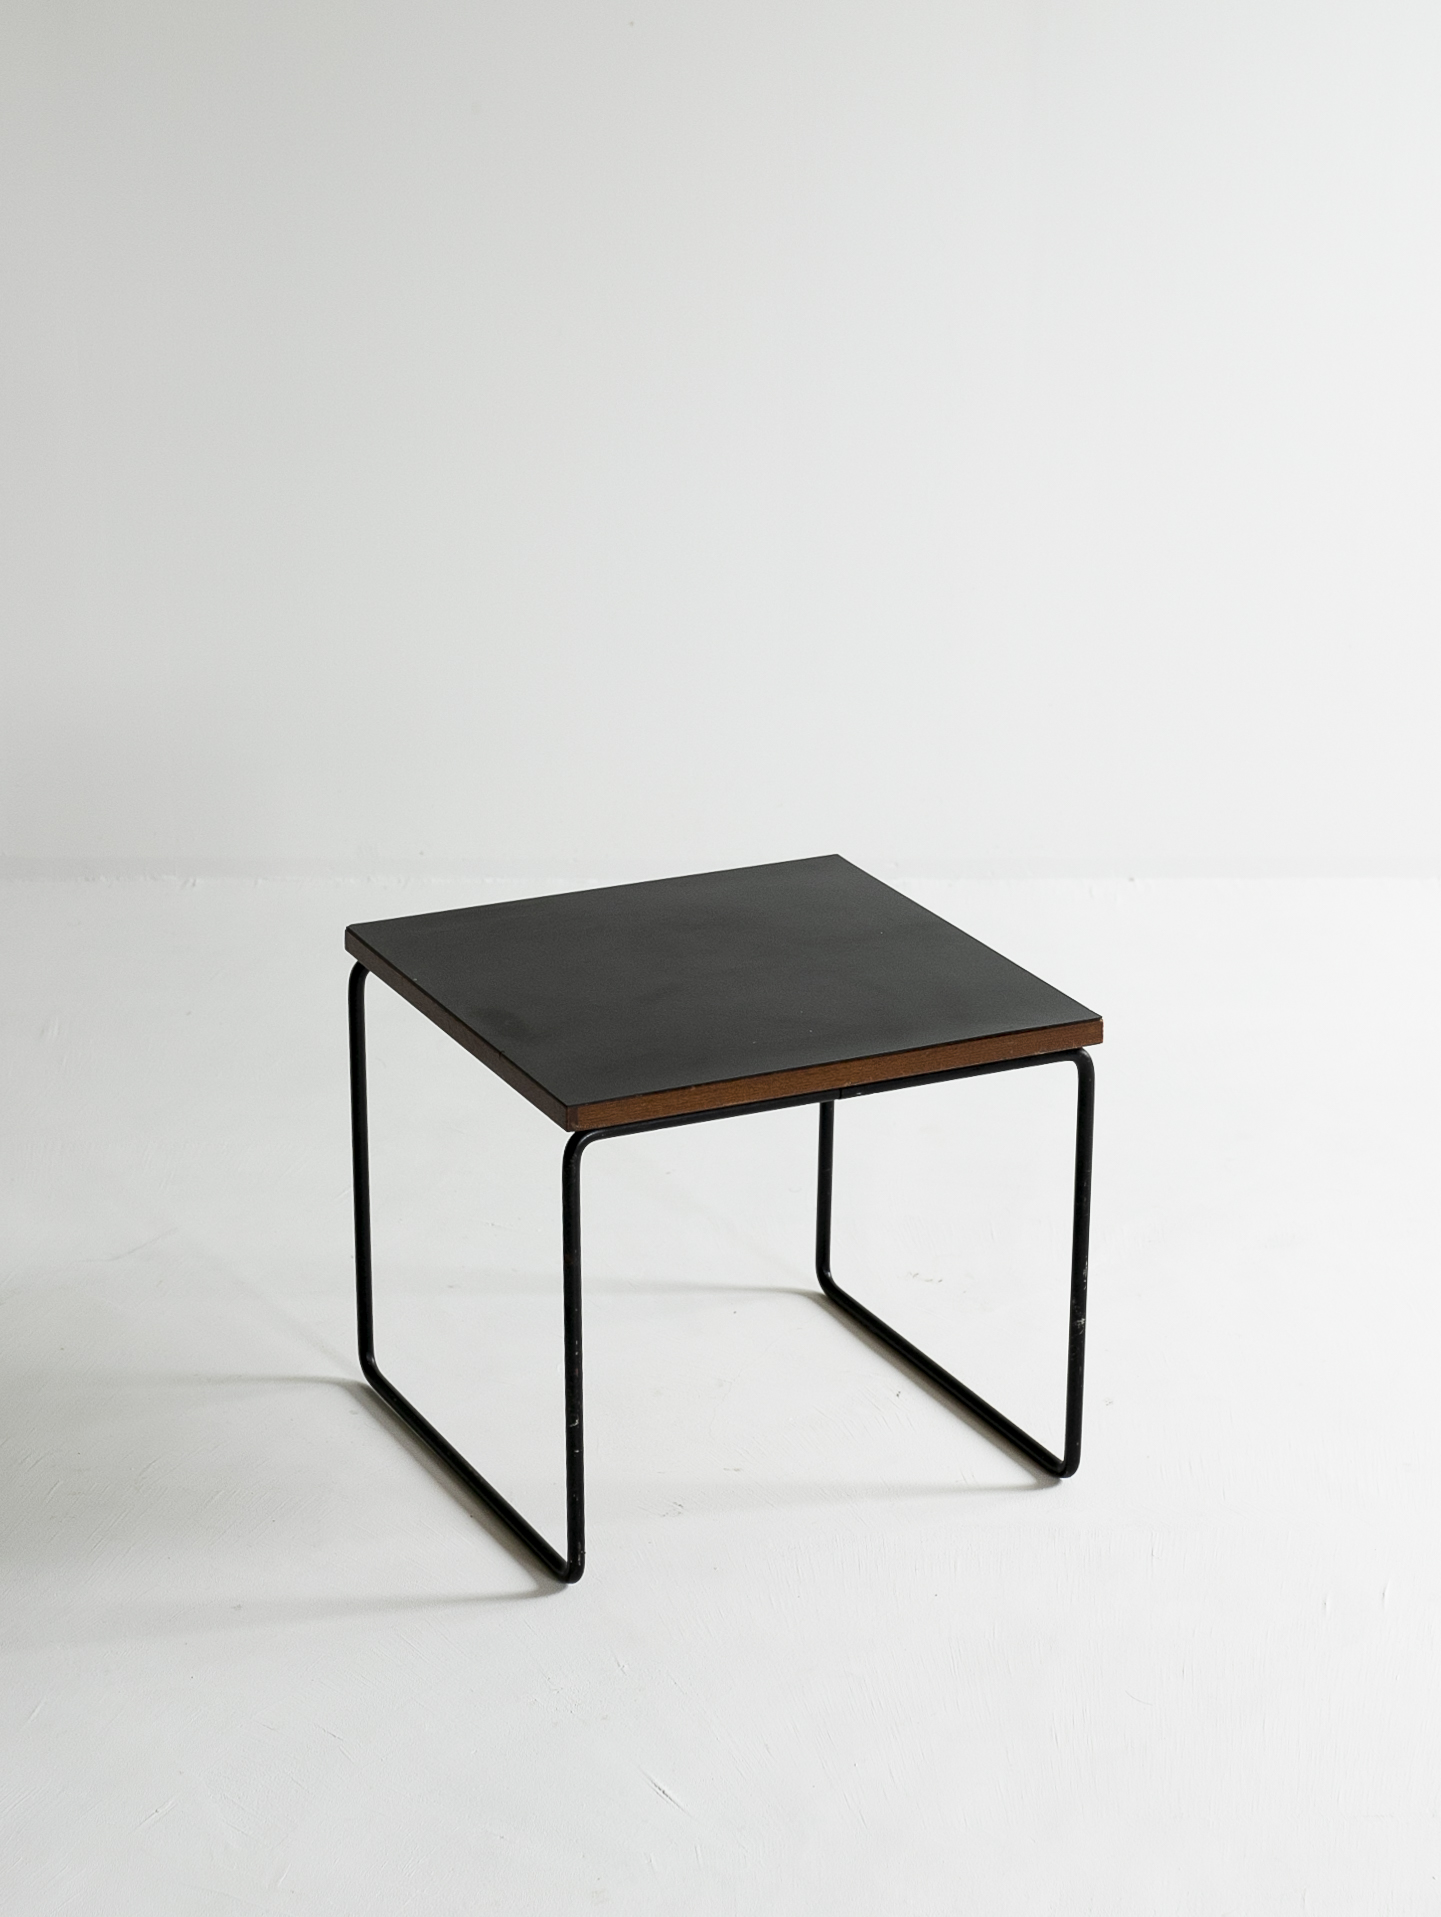 Pierre Guariche ”VOLANTE” Table for Steiner, 1950s